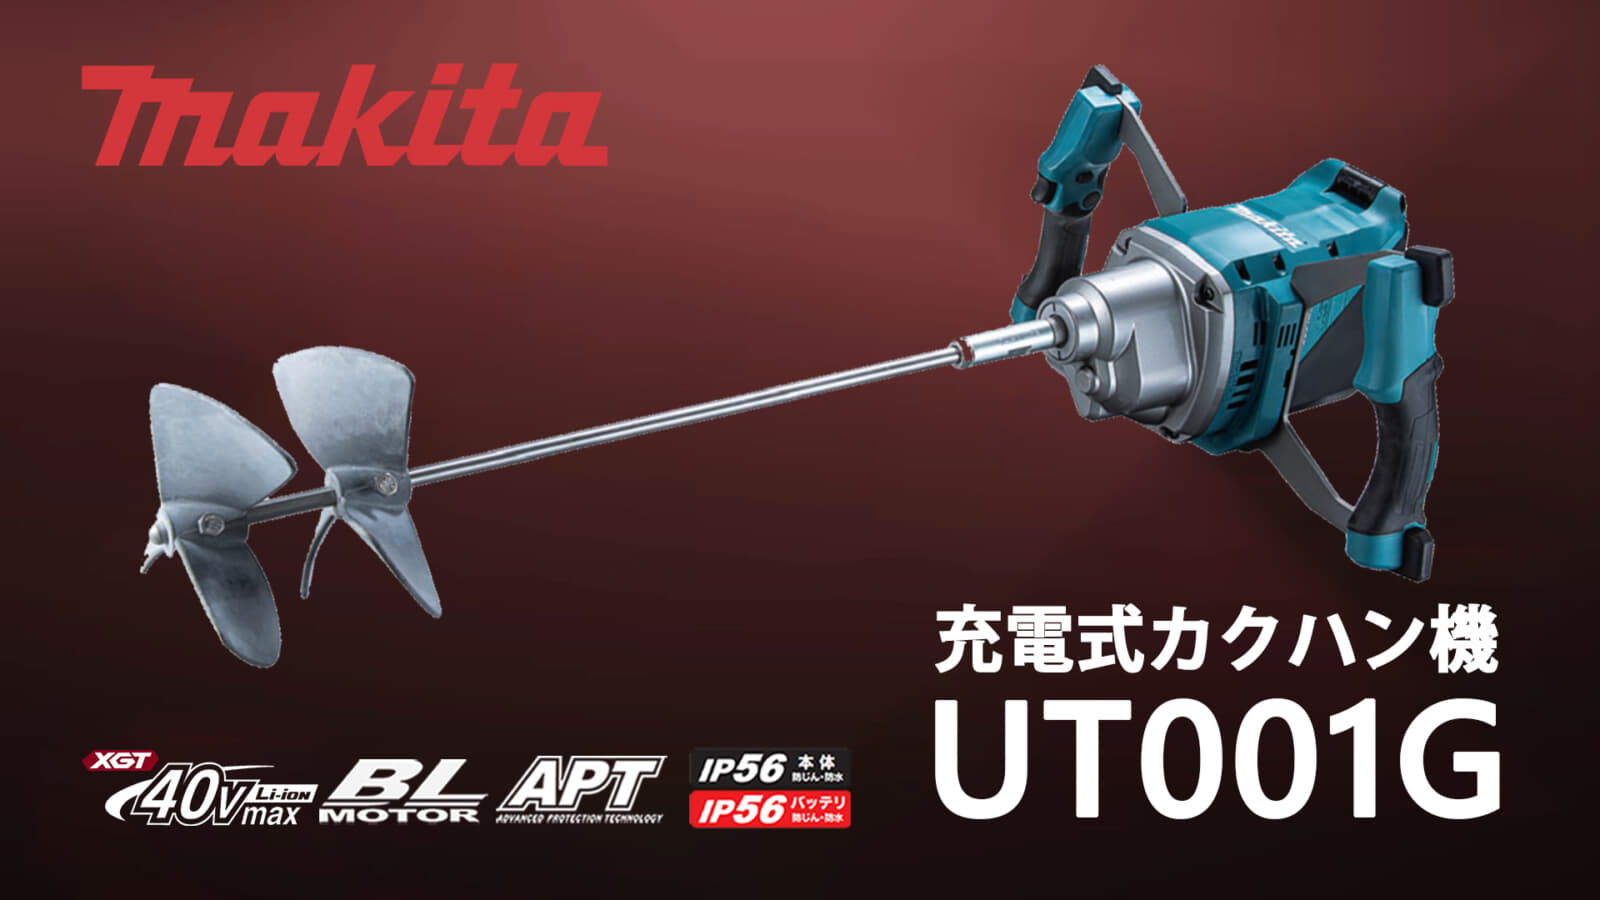 マキタ UT001G 充電式カクハン機を発売、ブレード最大径240mm対応の 